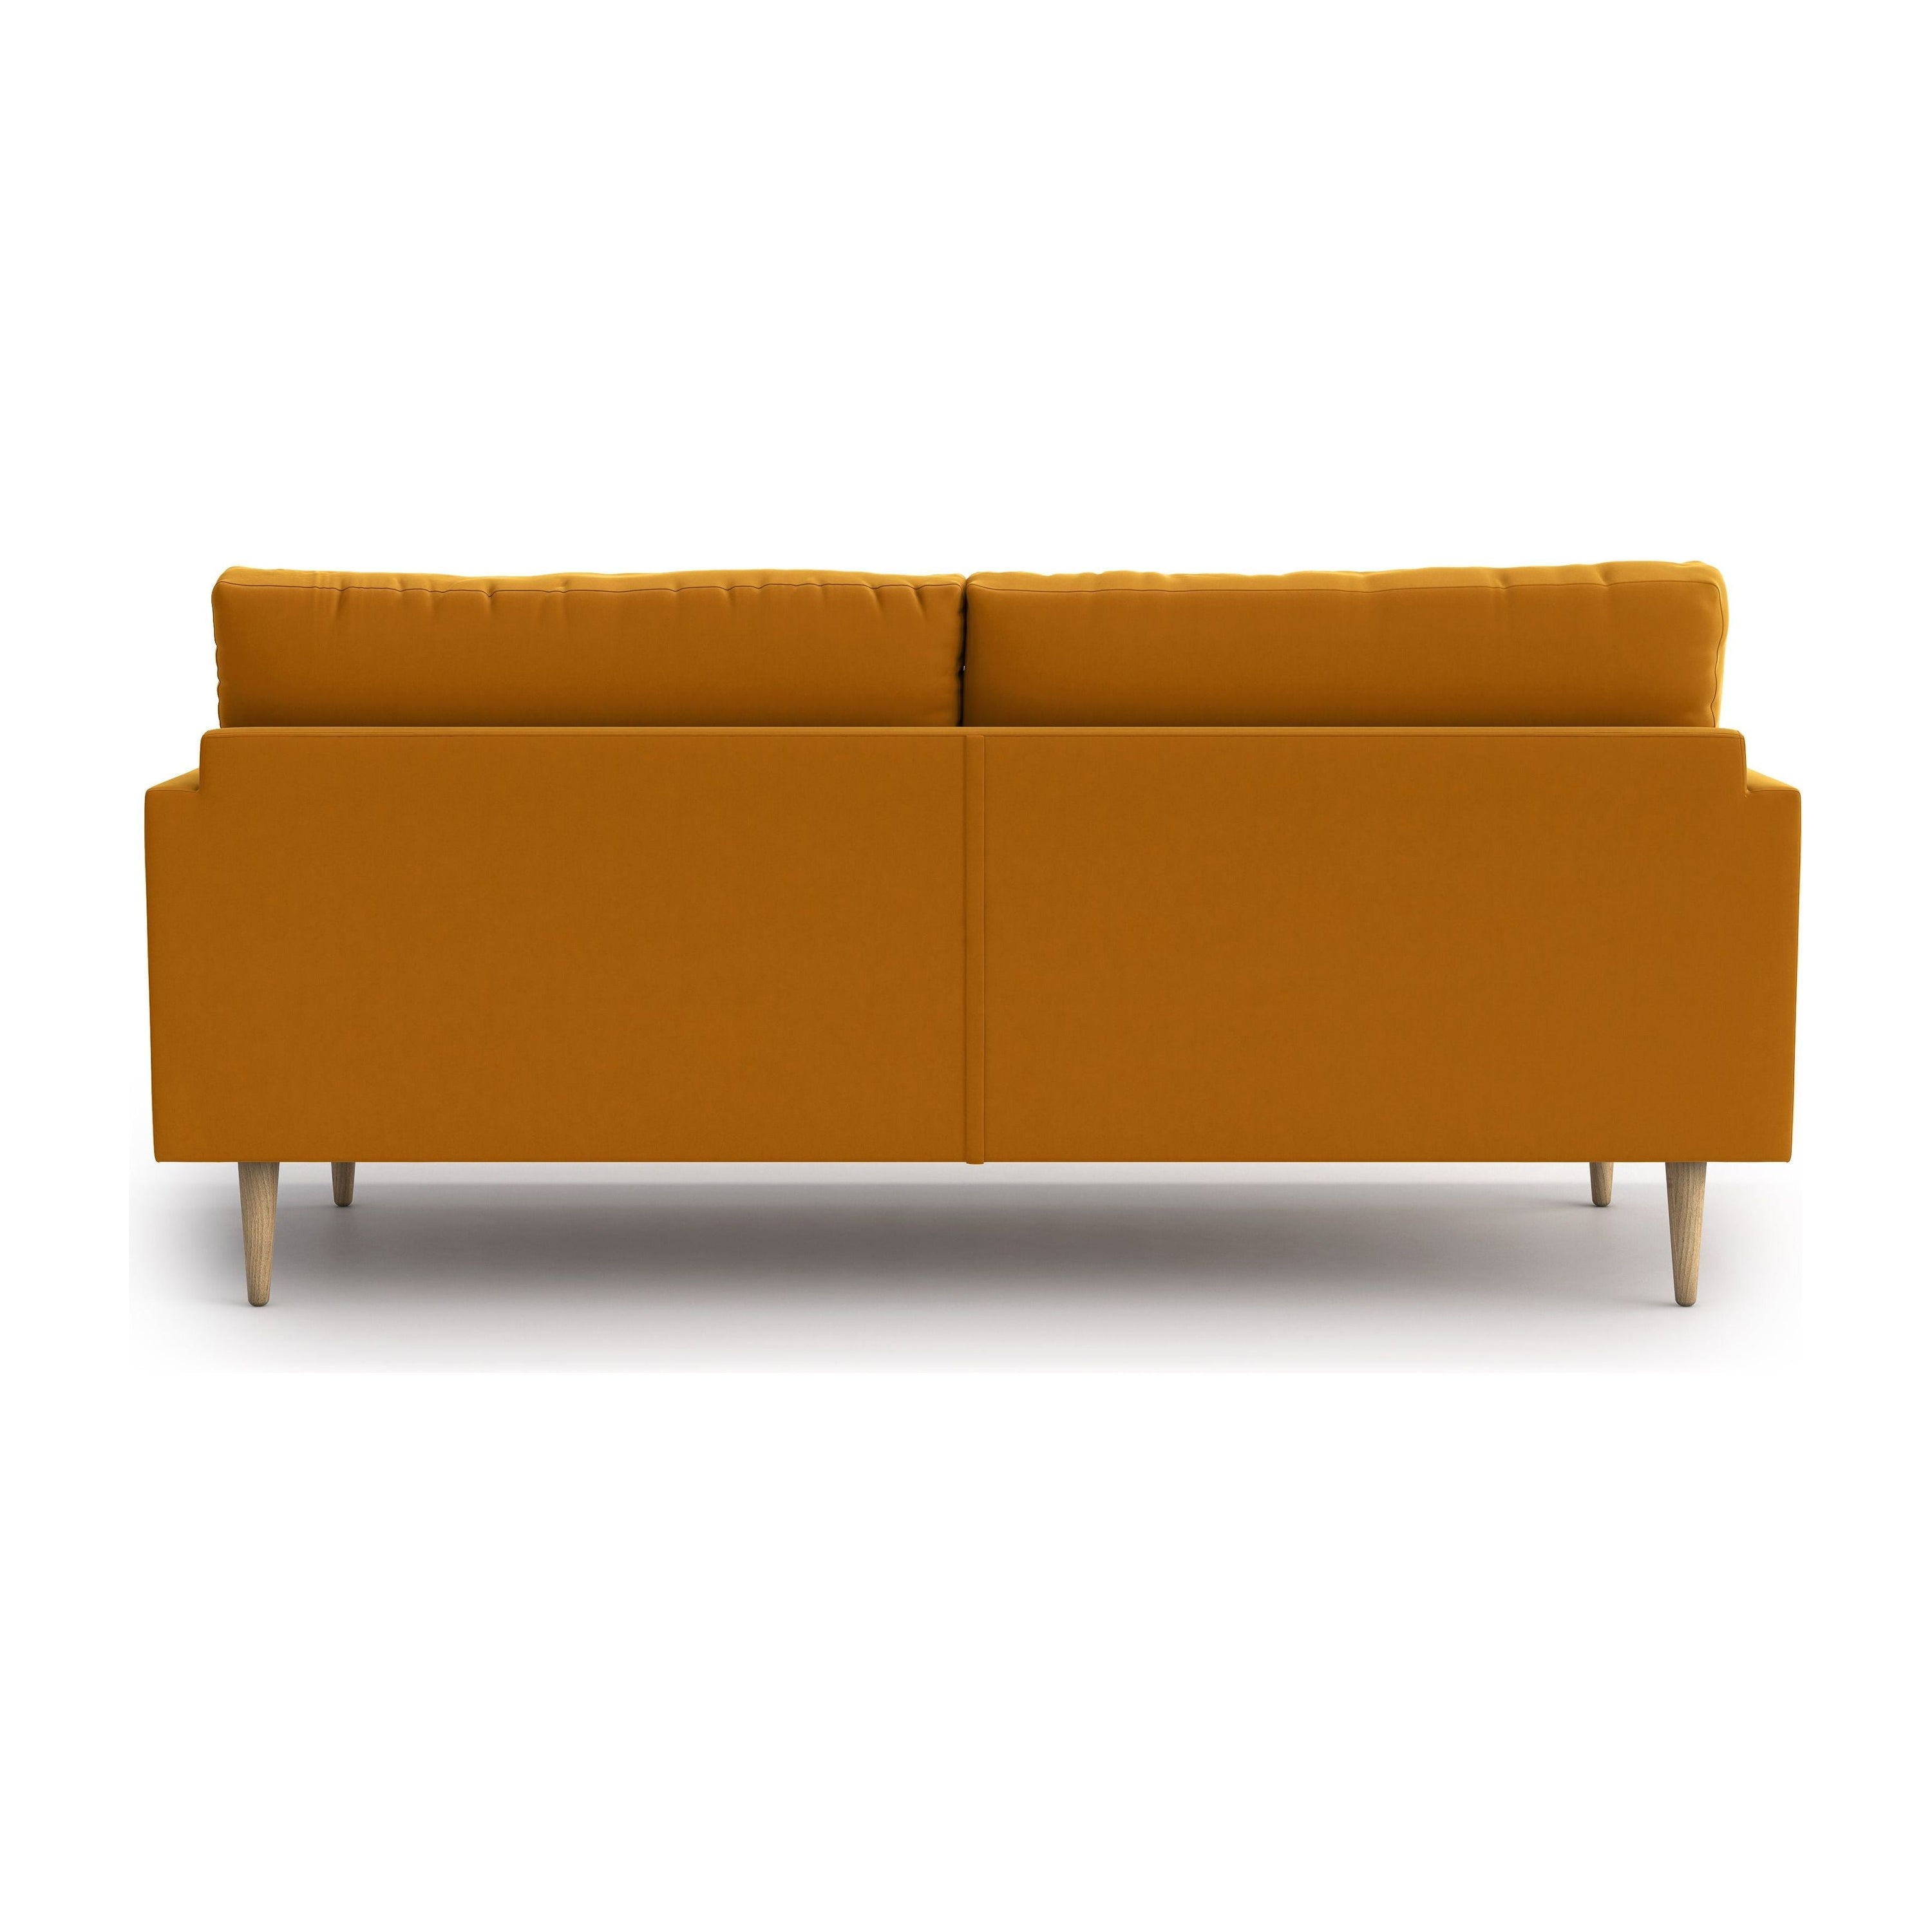 AMY 3 vietų sofa lova, oranžinė spalva